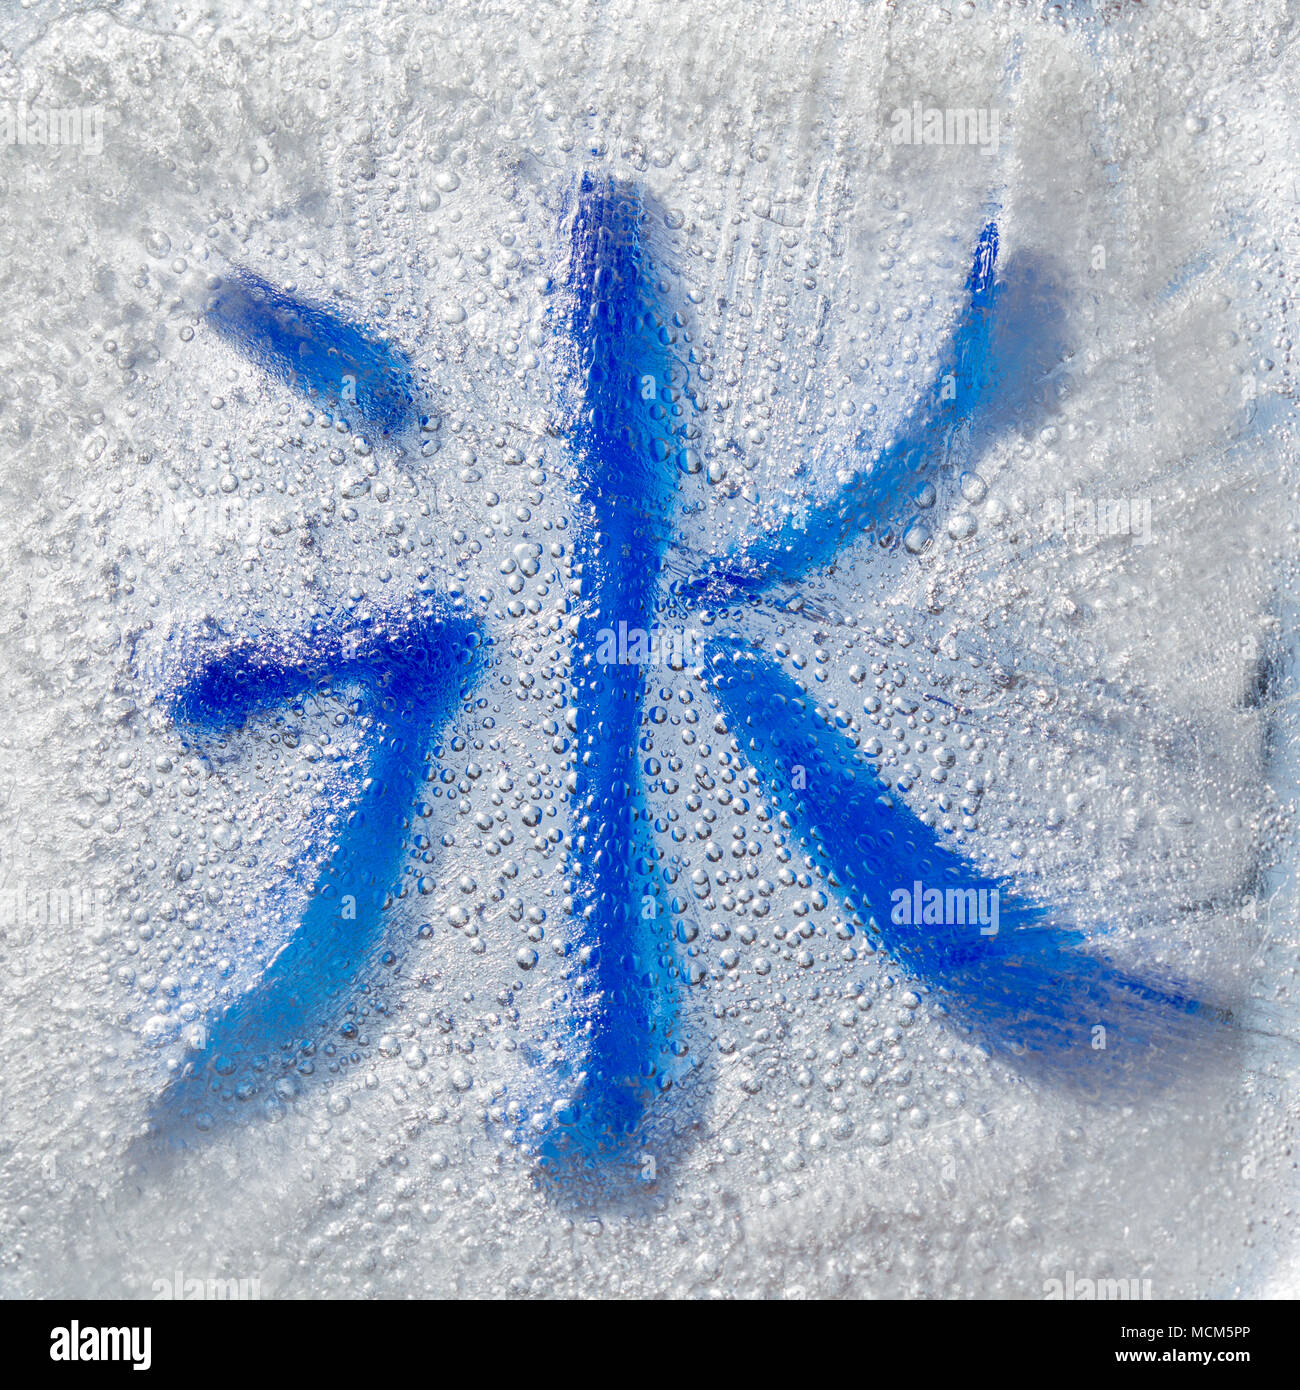 Symbole calligraphique chinois bing - la glace, vu à travers un bloc de glace Banque D'Images